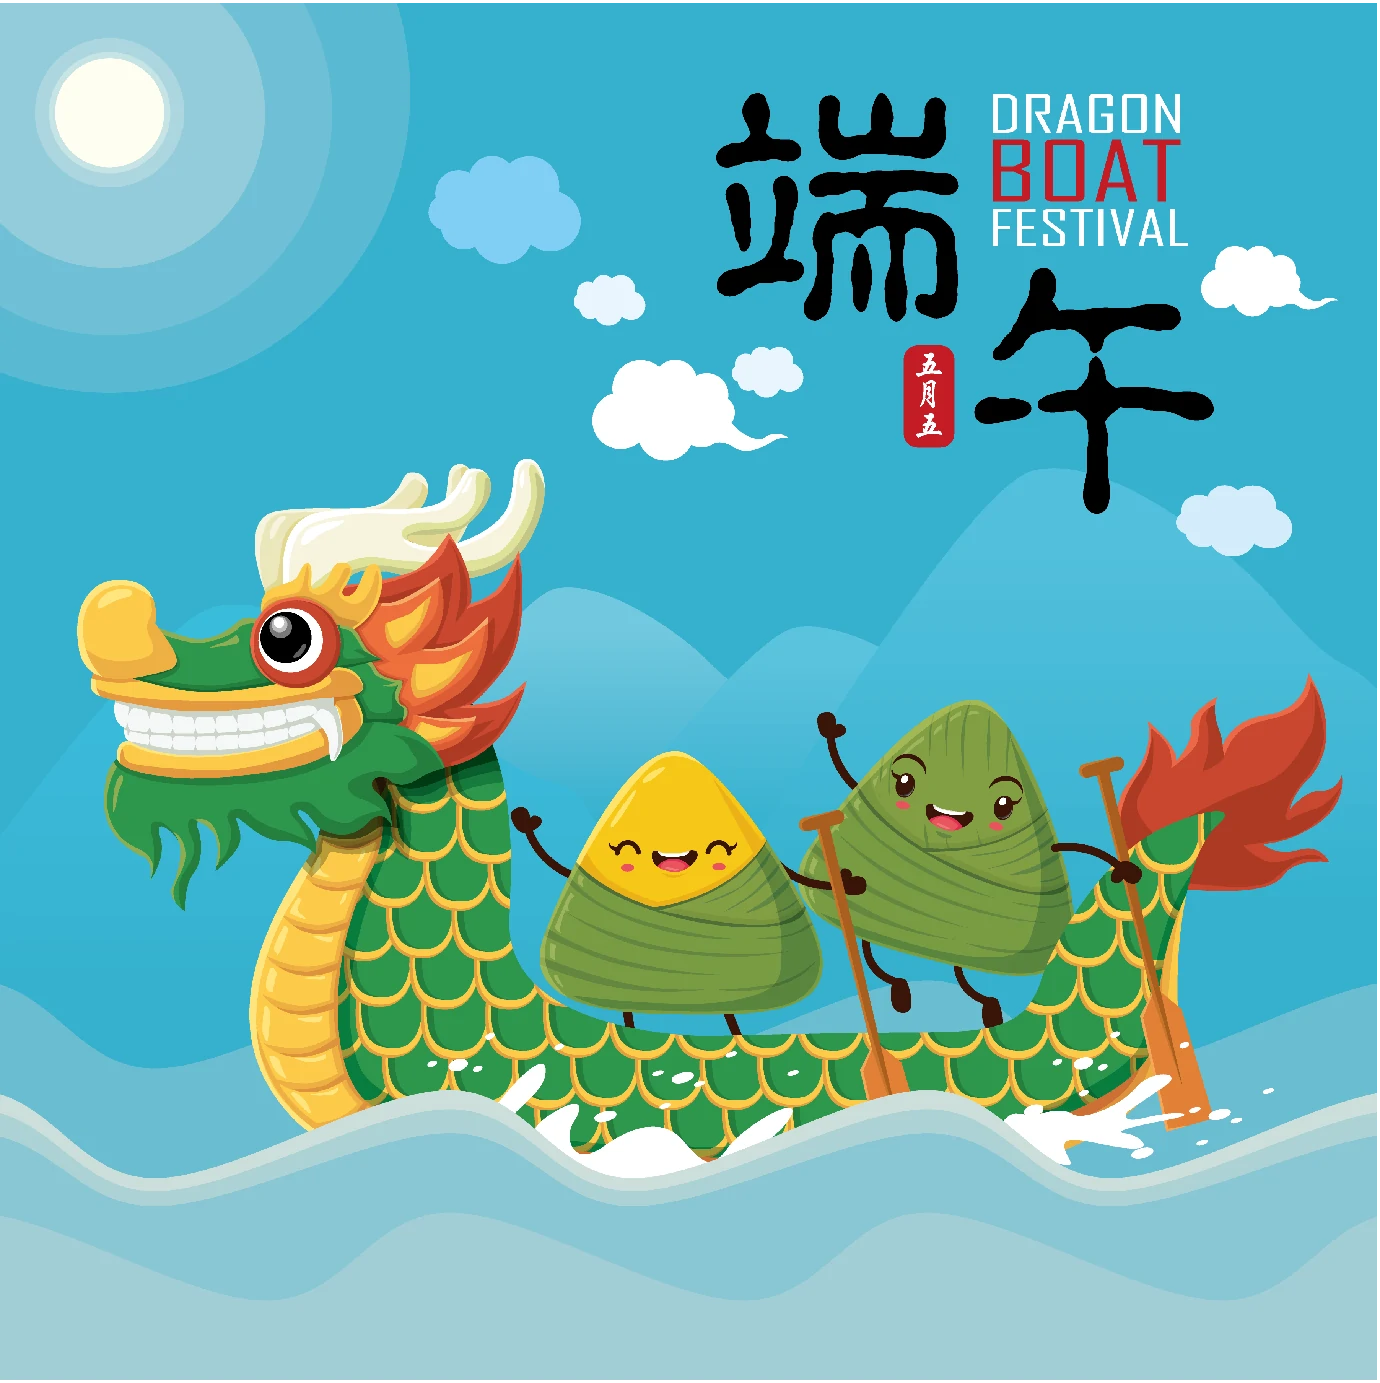 中国传统节日卡通手绘端午节赛龙舟粽子插画海报AI矢量设计素材【009】